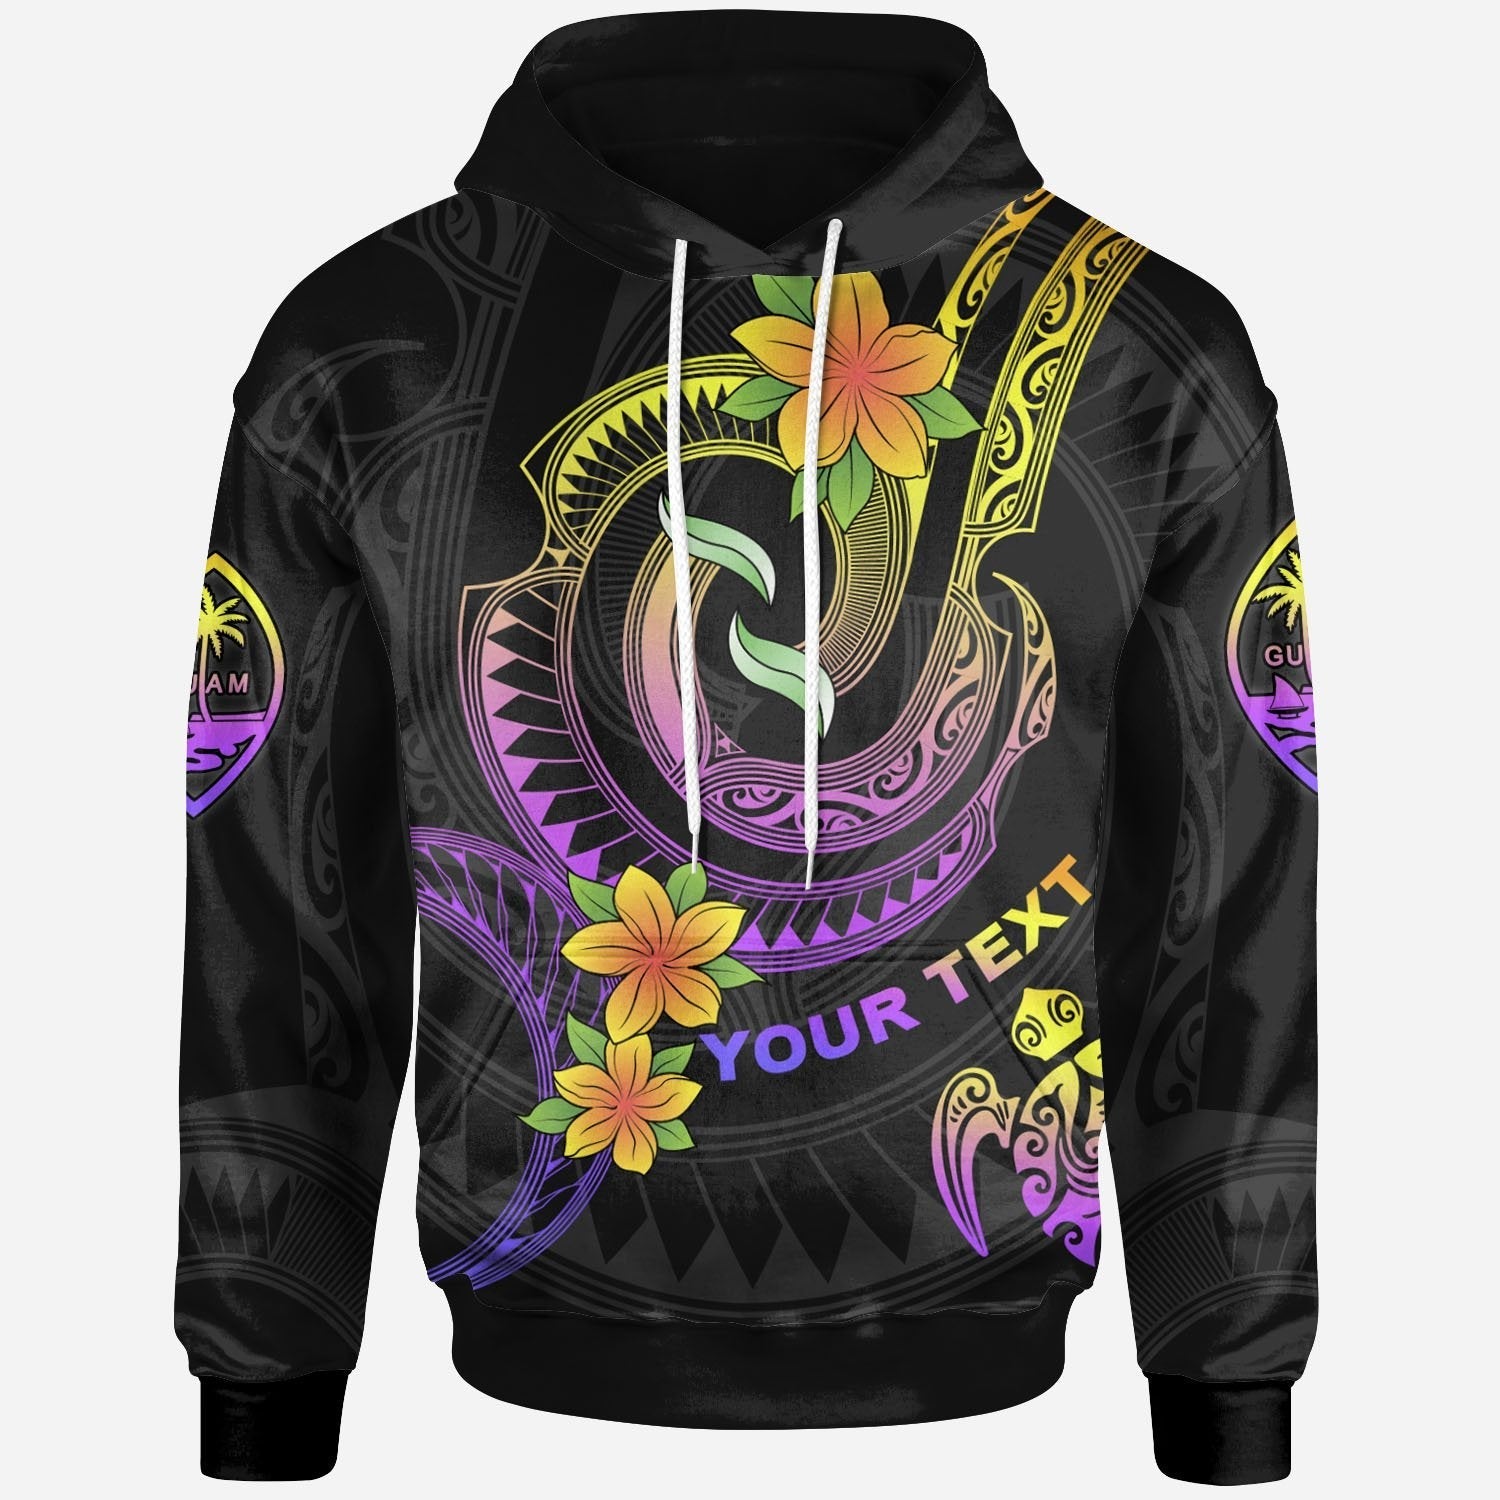 guam-custom-personalised-hoodie-plumeria-flowers-with-spiral-patterns